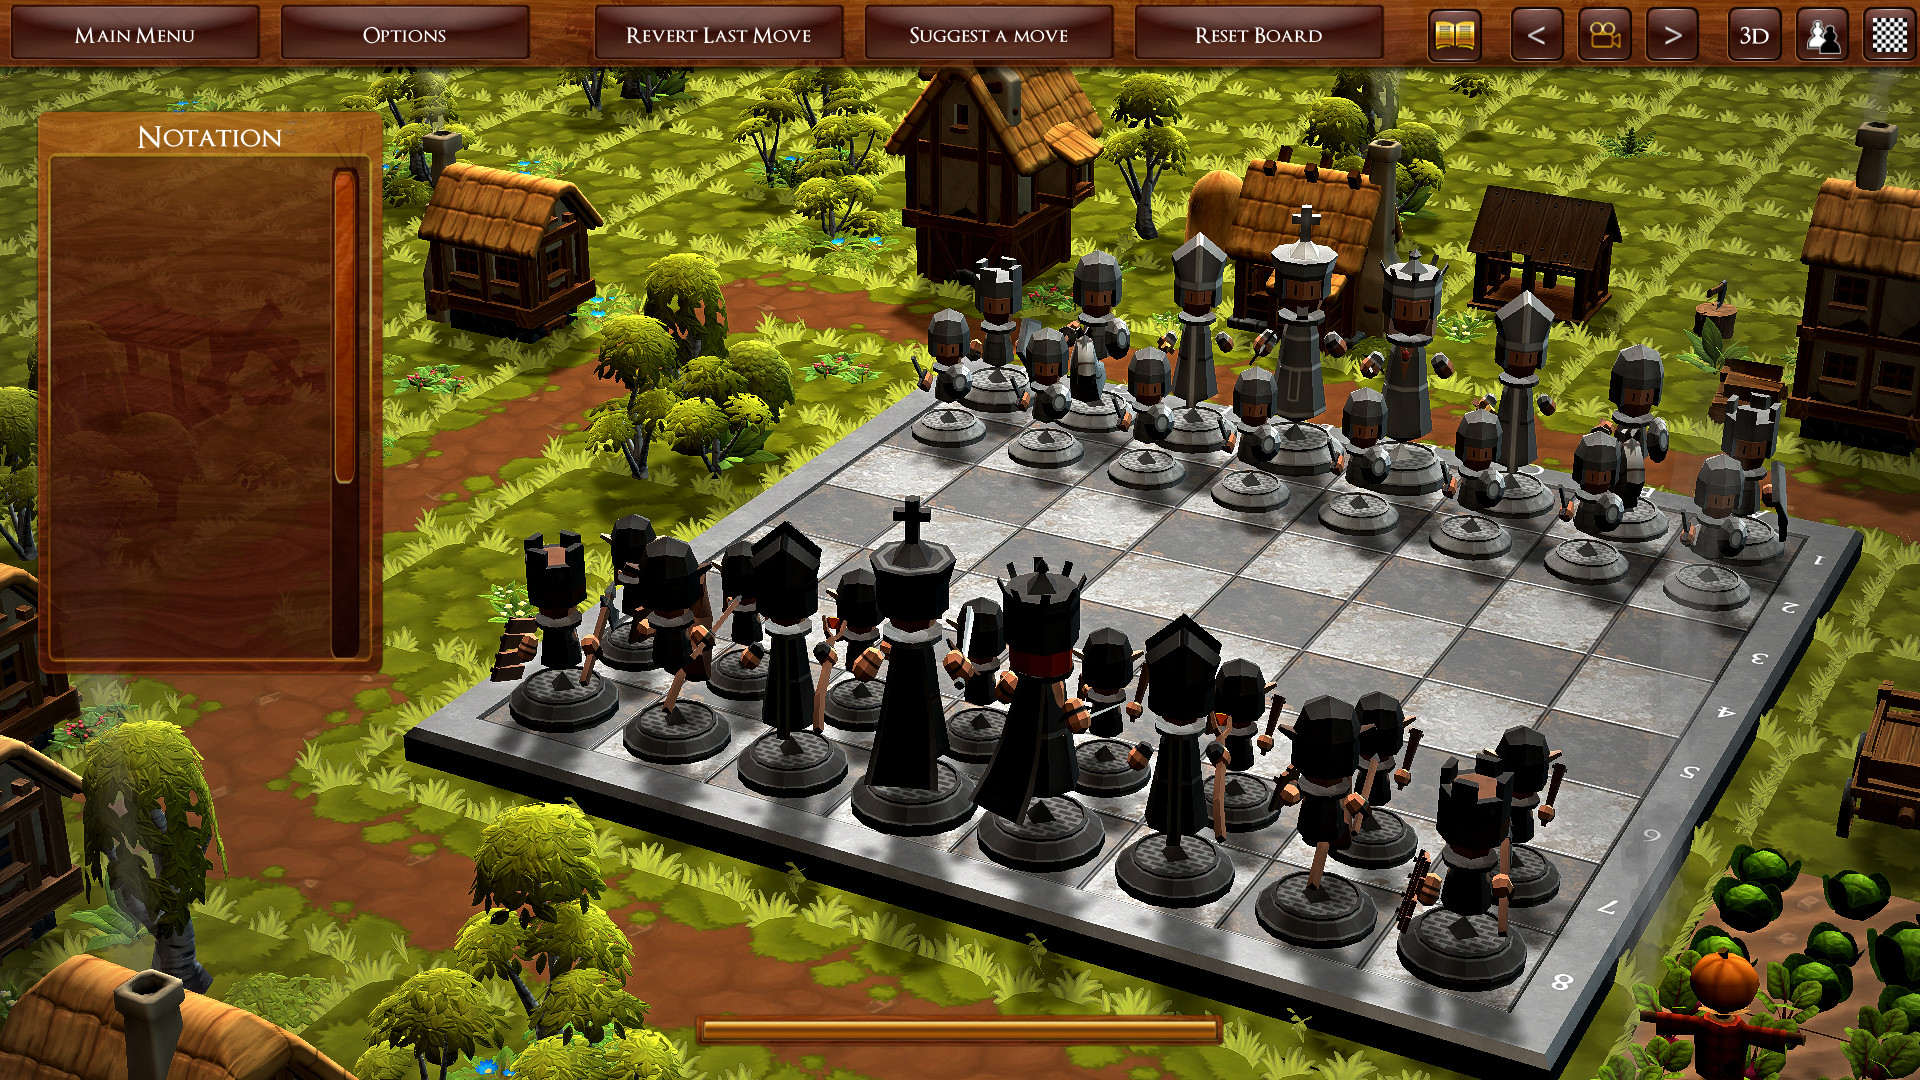 3d Chess Game For Pc Free Download Full Version - Sekumpulan Game